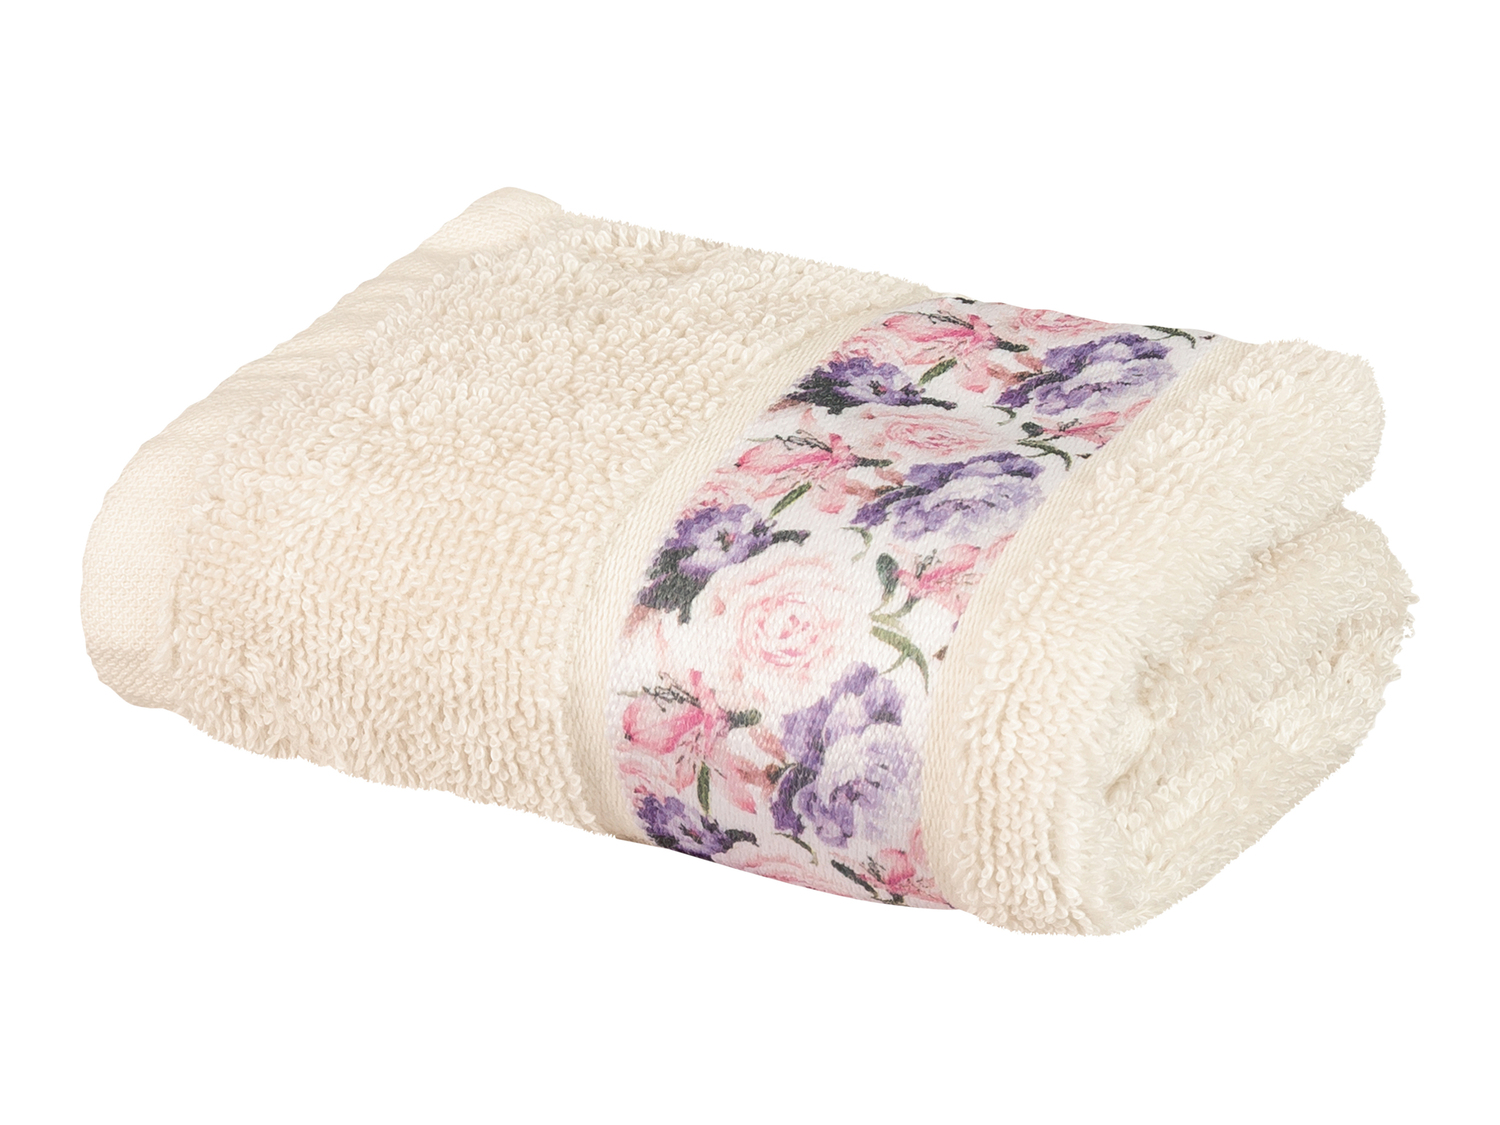 Asciugamano Miomare, prezzo 3.49 &#8364; 
30 x 50 cm - 4 pezzi 
- In cotone ...